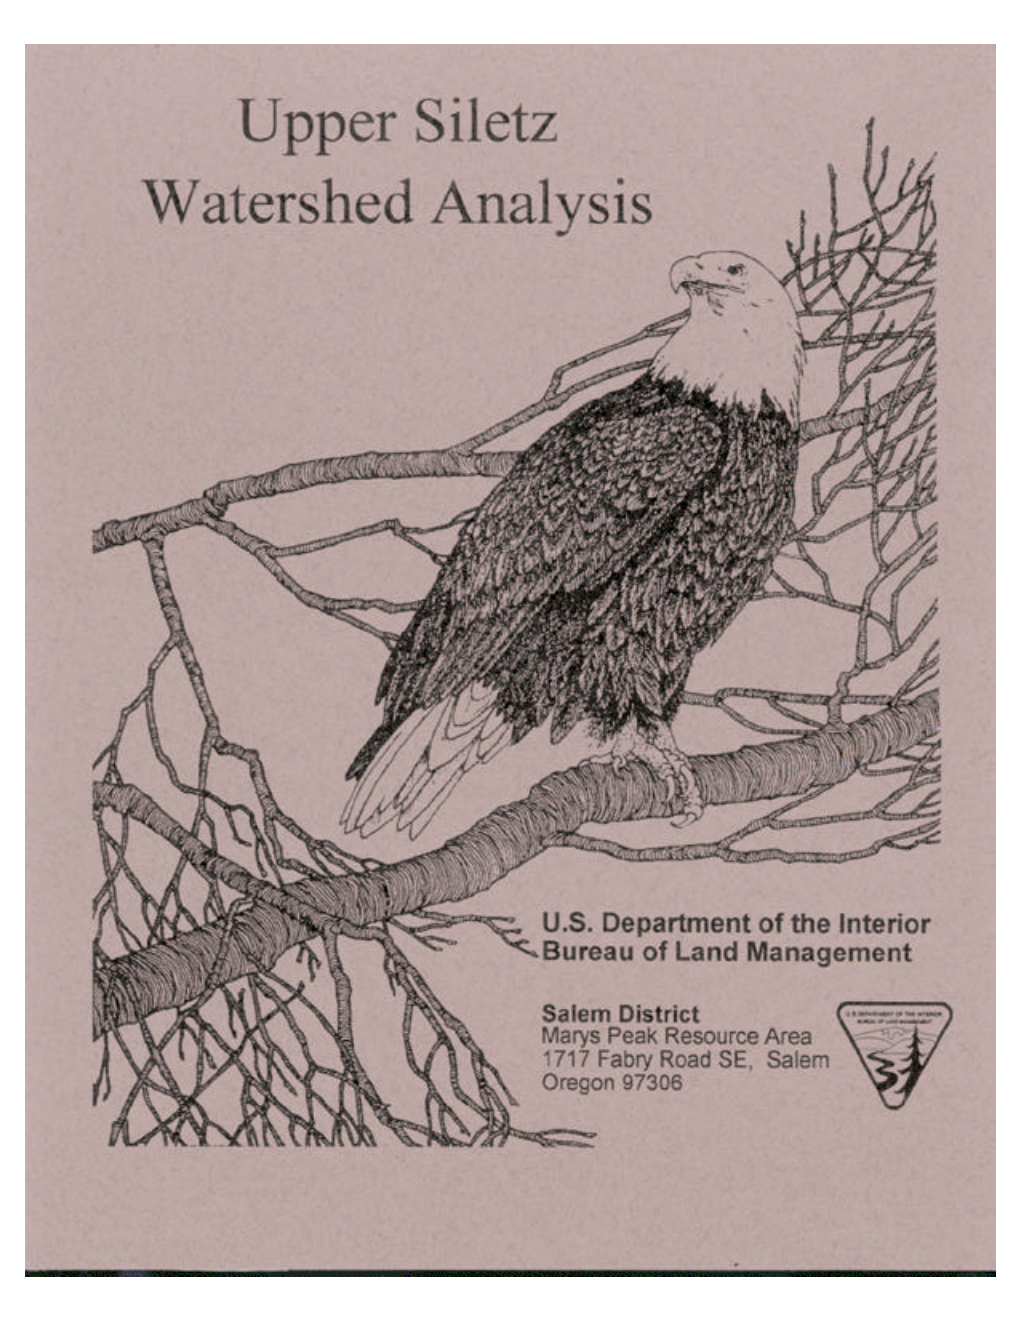 Upper Siletz Watershed Analysis